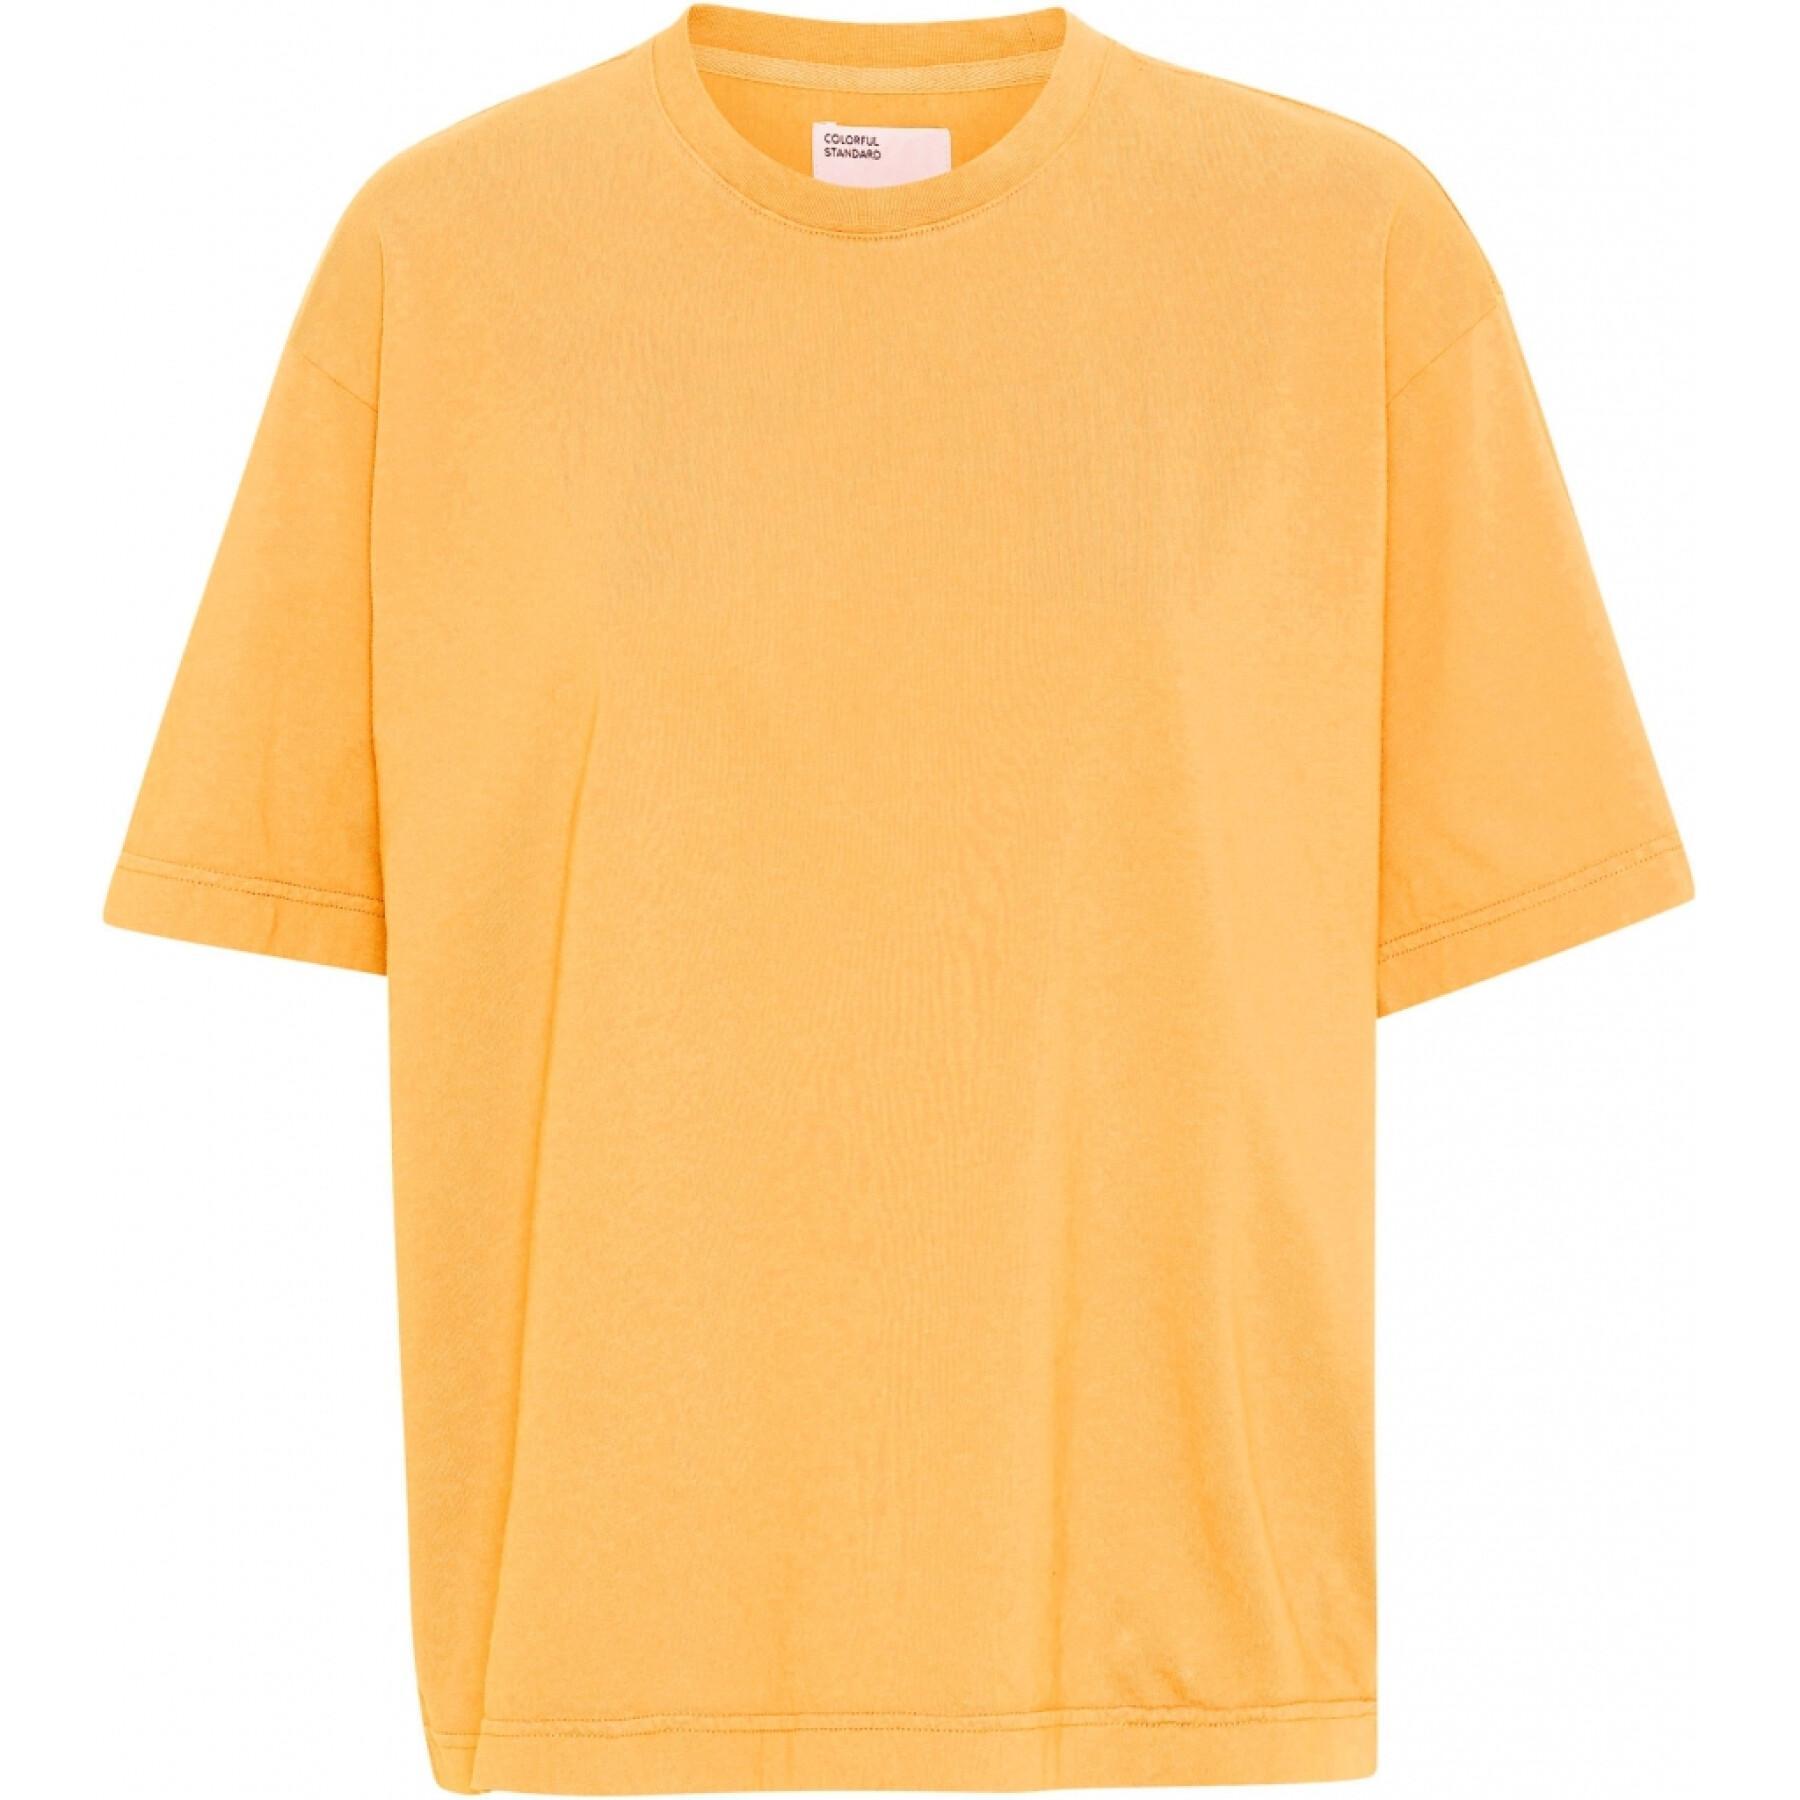 Camiseta feminina Colorful Standard Organic oversized burned yellow